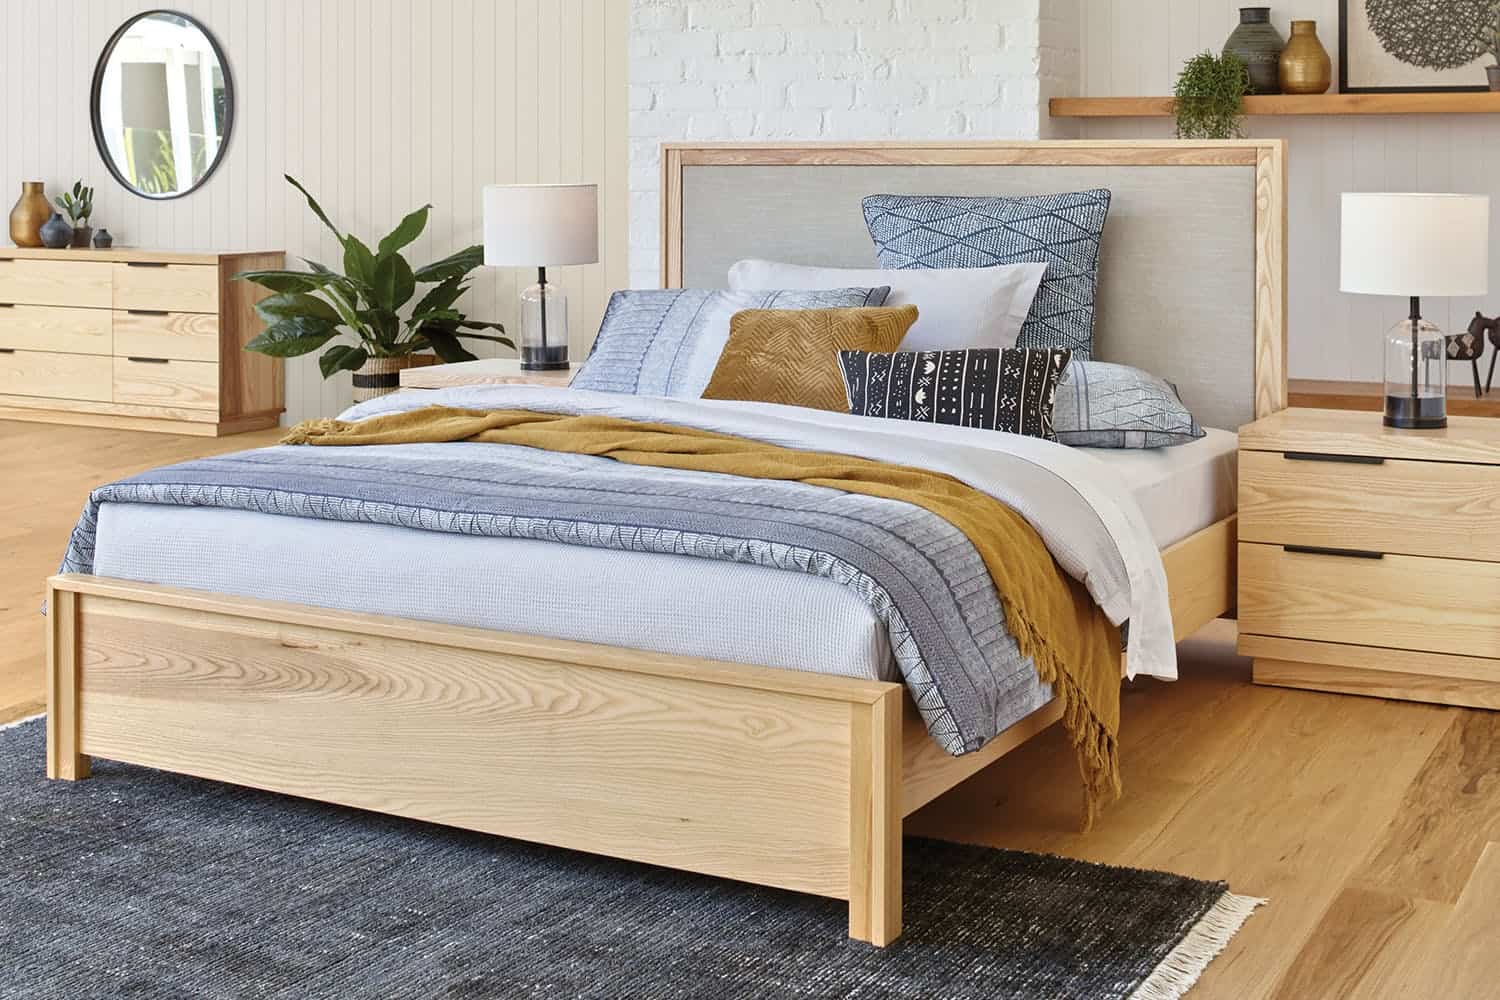 Giường ngủ gỗ tự nhiên đầy sang trọng và hài hòa với thiên nhiên